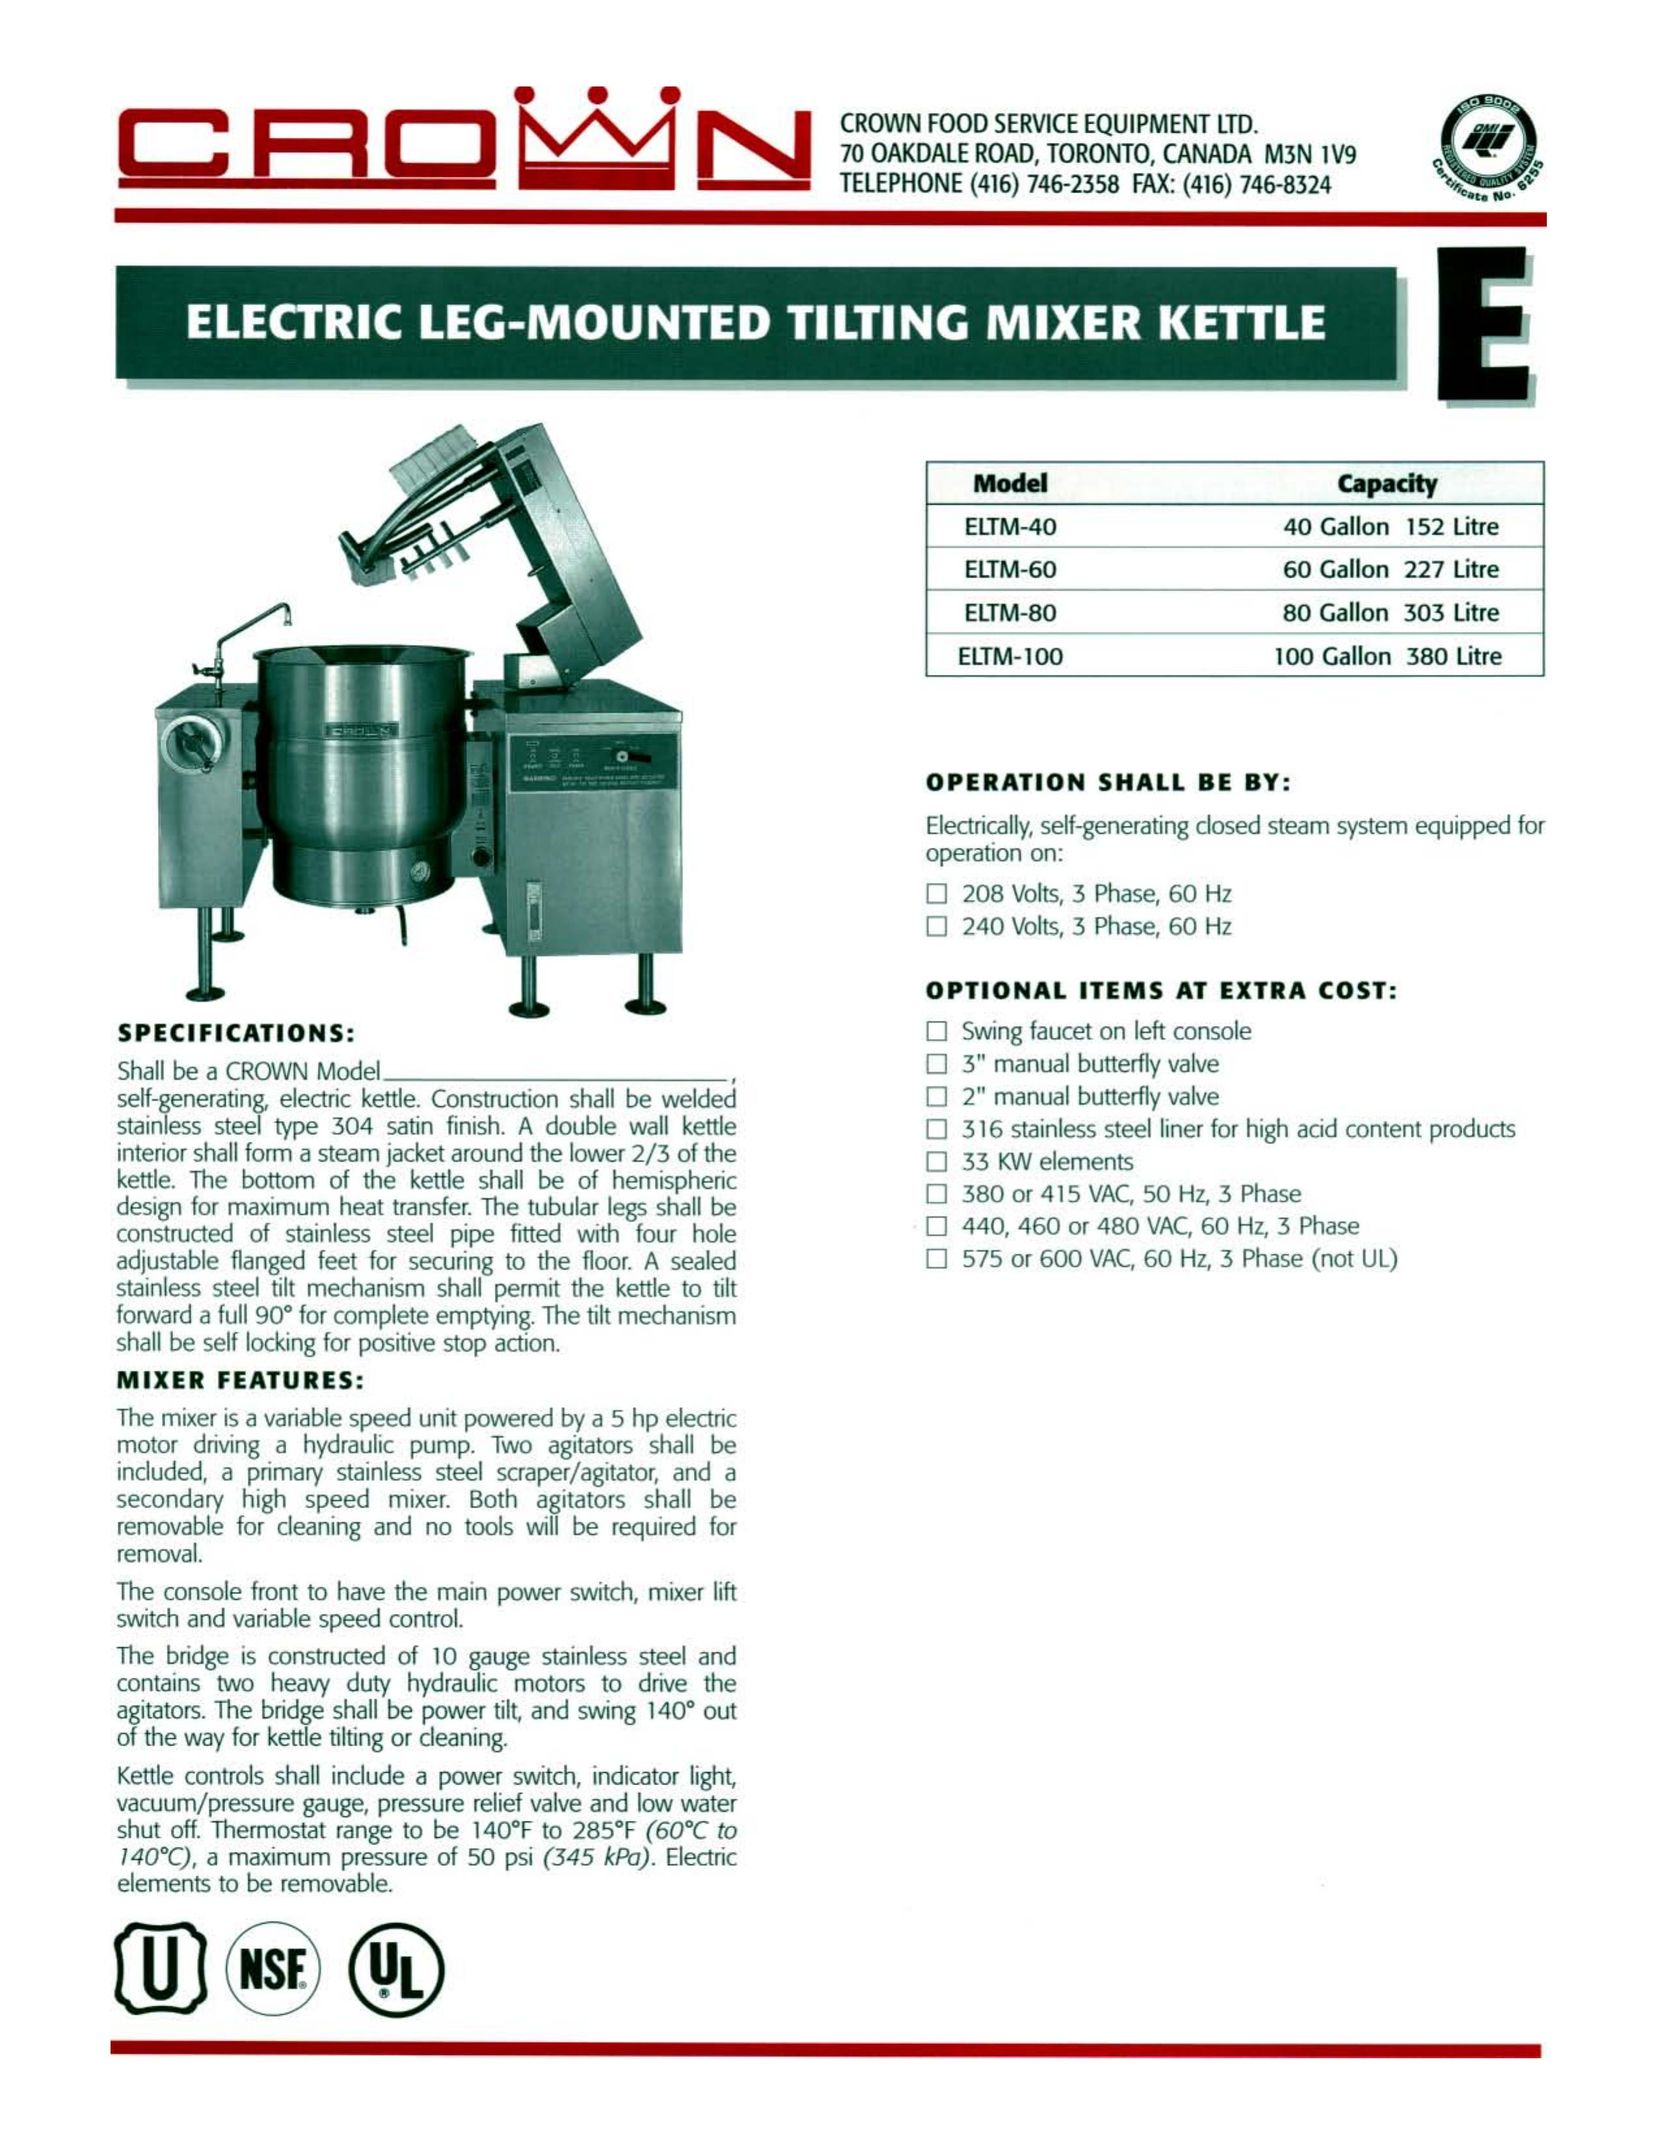 Crown Equipment ELTM-100 Hot Beverage Maker User Manual